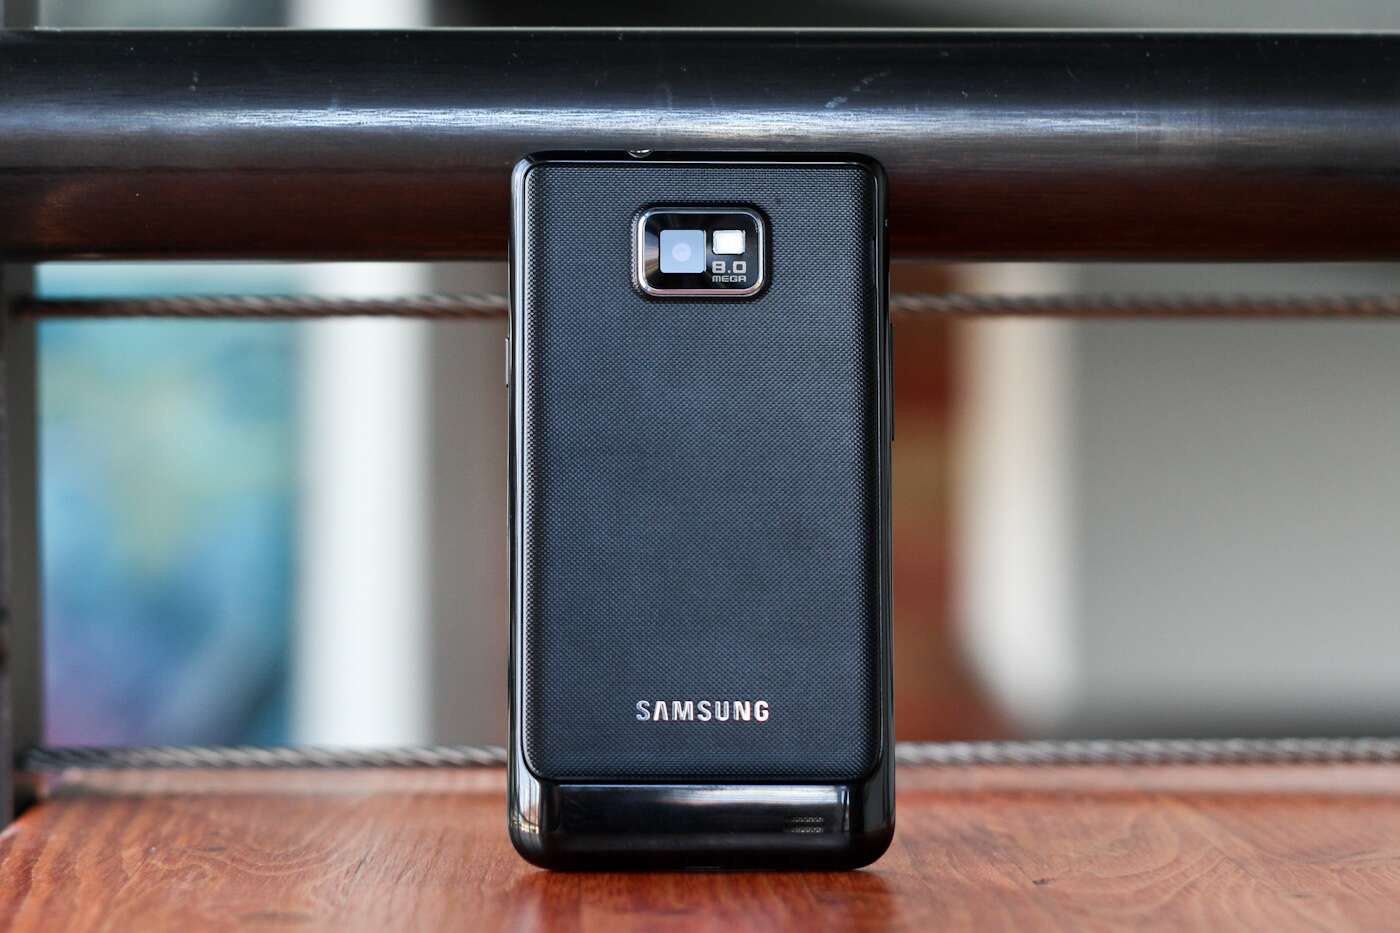 آپدیت اندروید ۱۲ سامسونگ Galaxy S II با رام غیررسمی ارایه شد